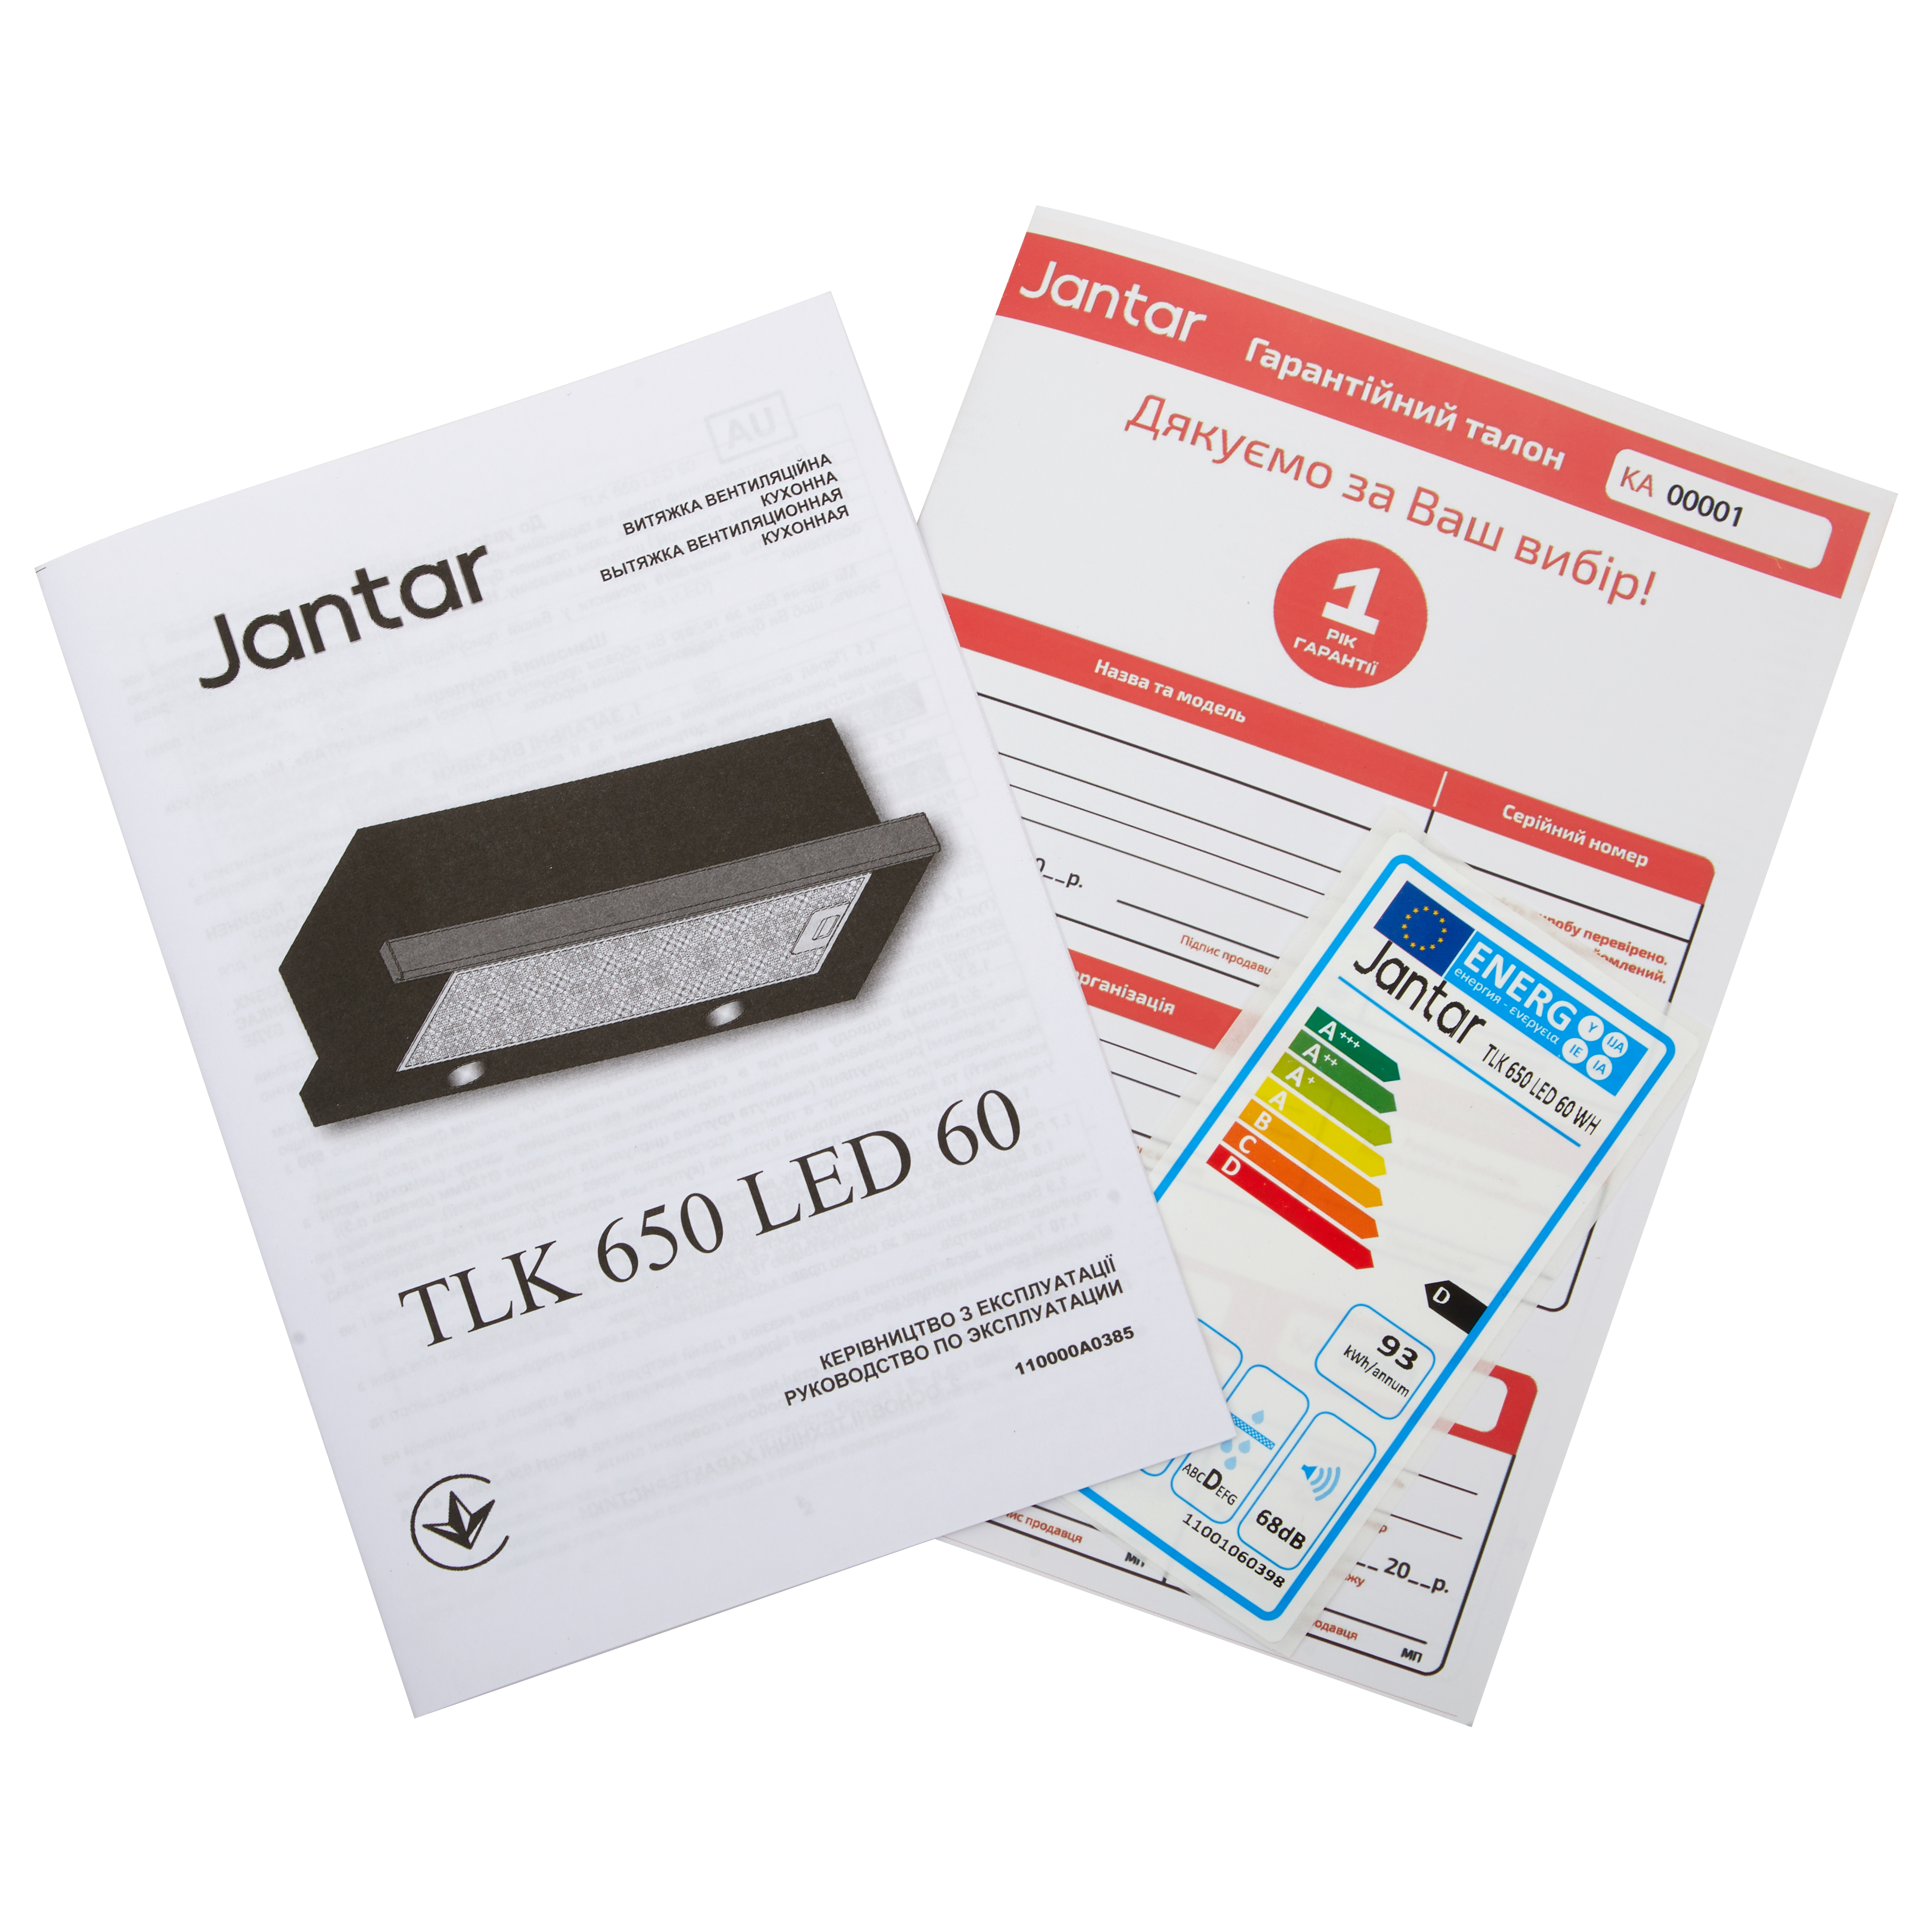 JANTAR TLK 650 LED 60 IS+GR